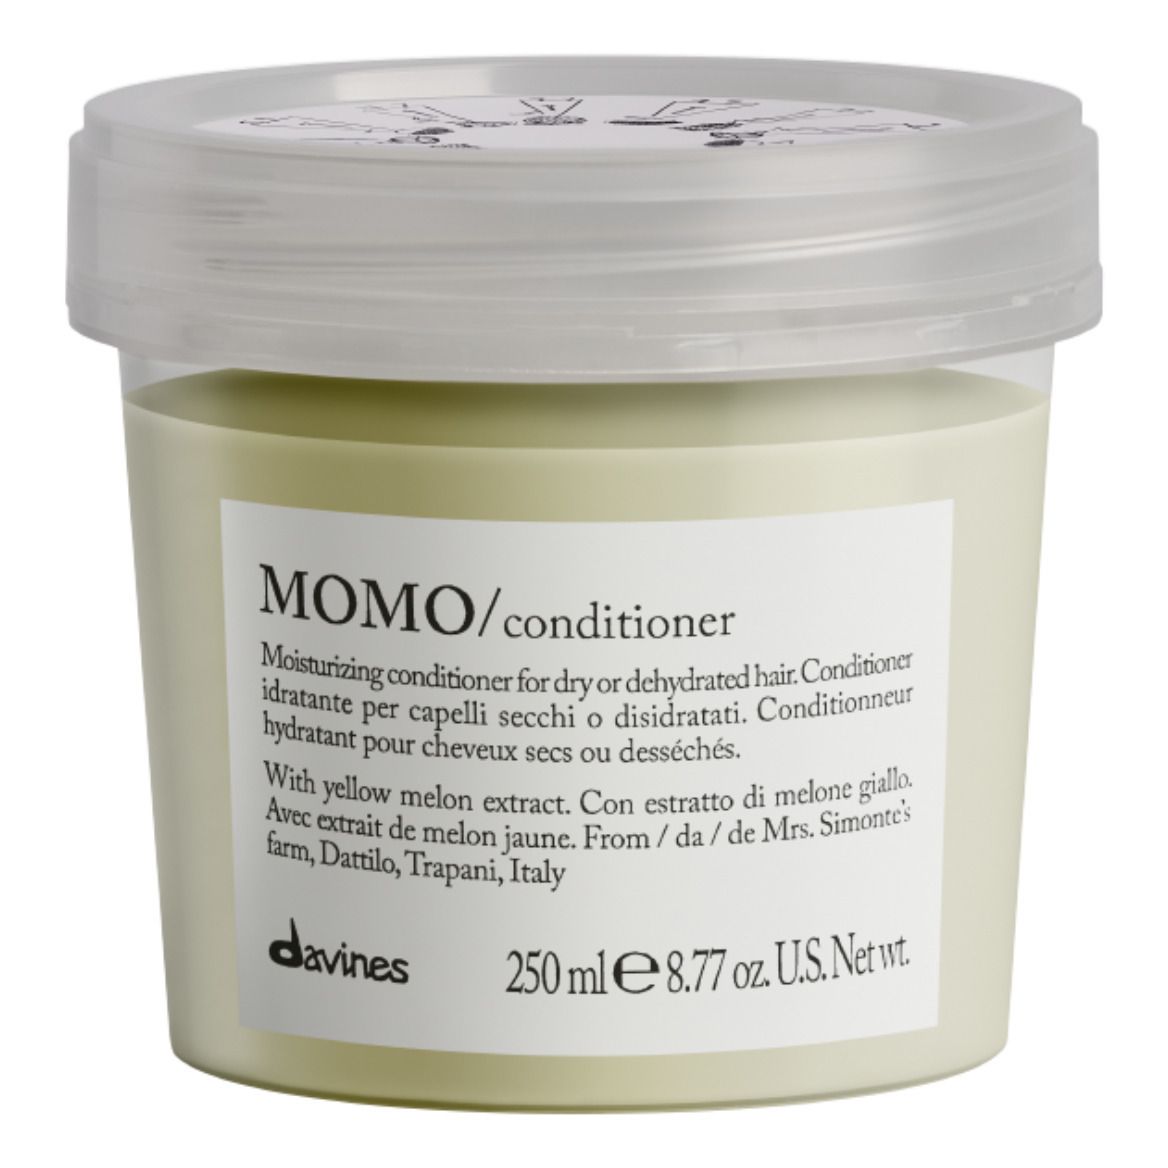 Davines - Après-shampoing hydratant pour cheveux secs Momo -250ml - Non teinté